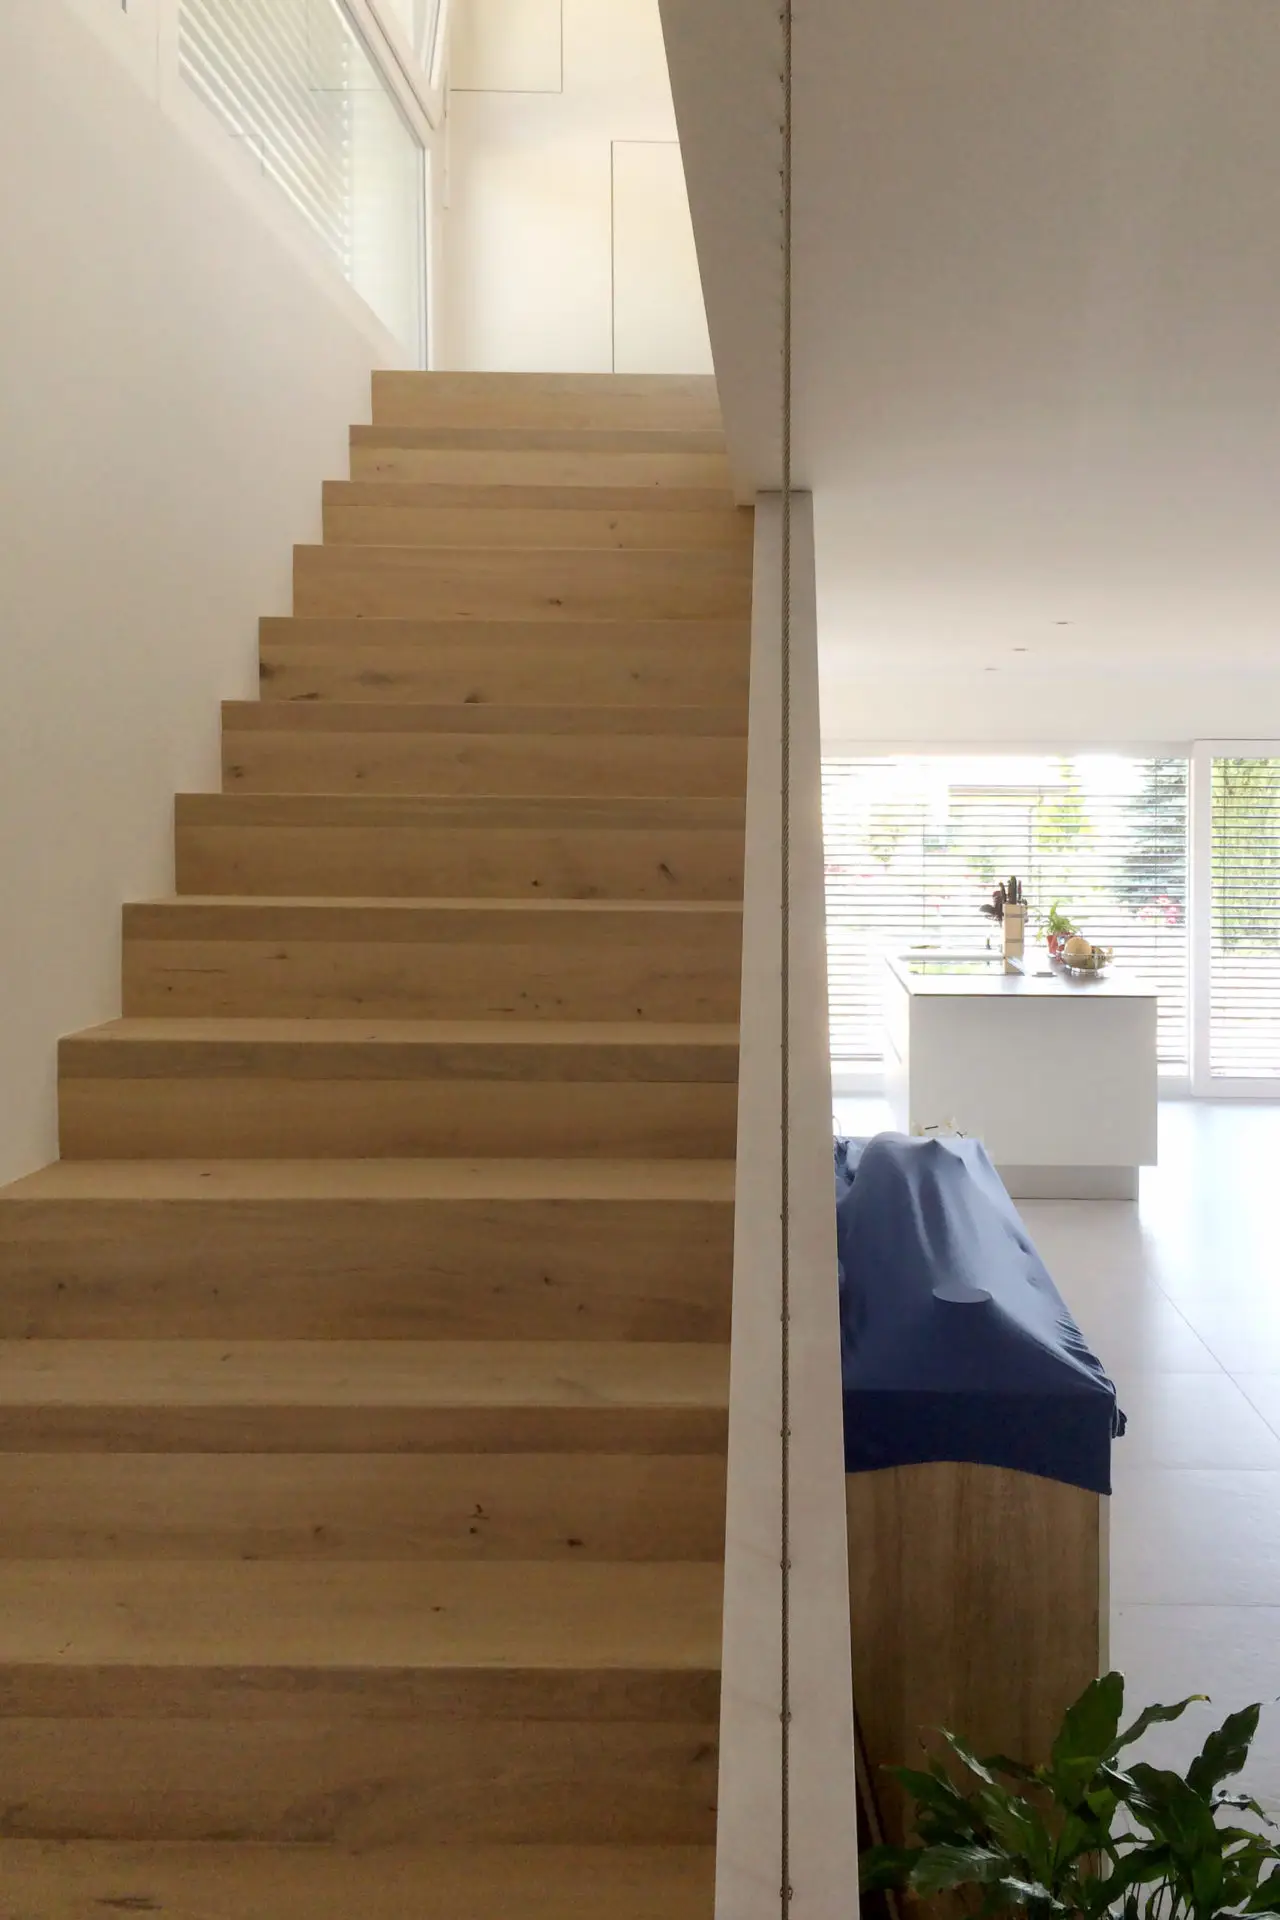 Escalier en bois dans une maison moderne.